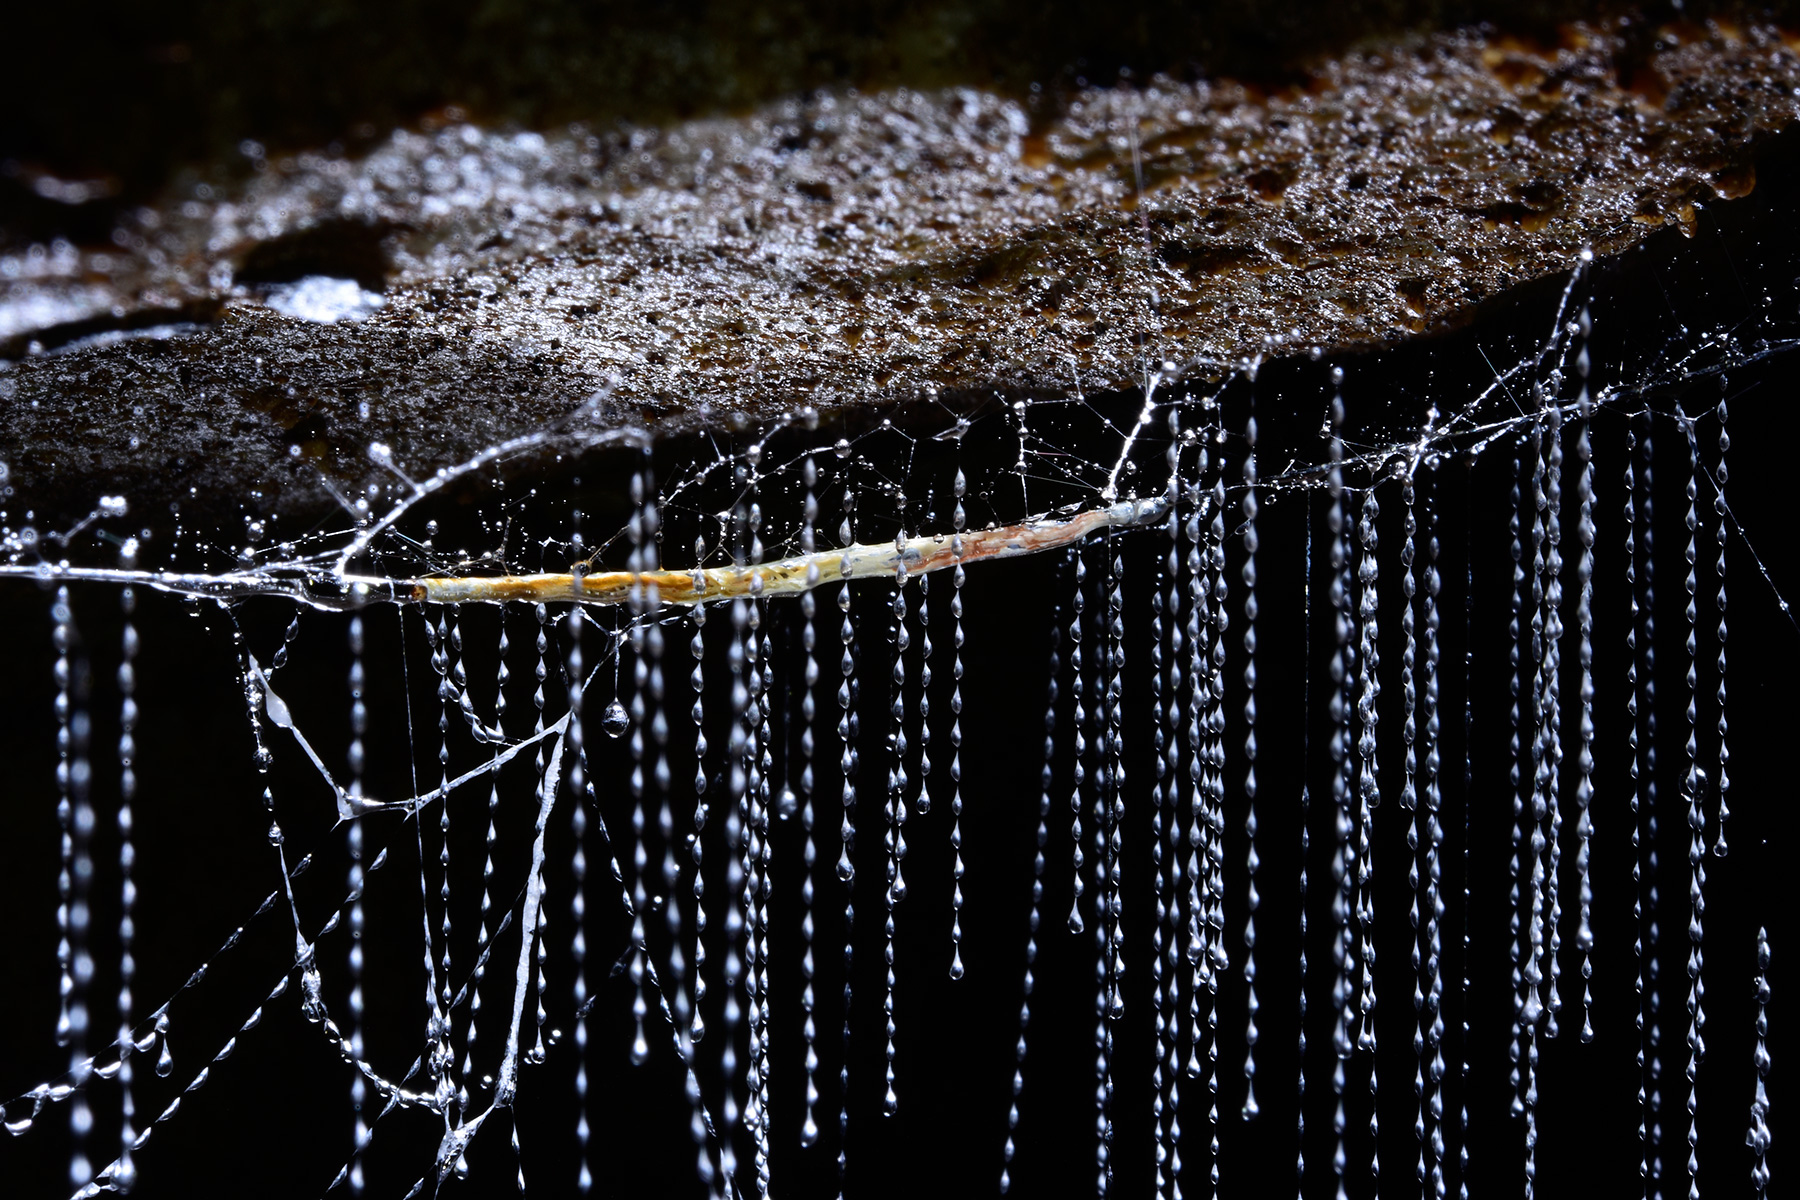 Waipuna Cave (Nouvelle Zélande) - "Glowworm" (ver luisant) avec les filaments qu'il a tissés